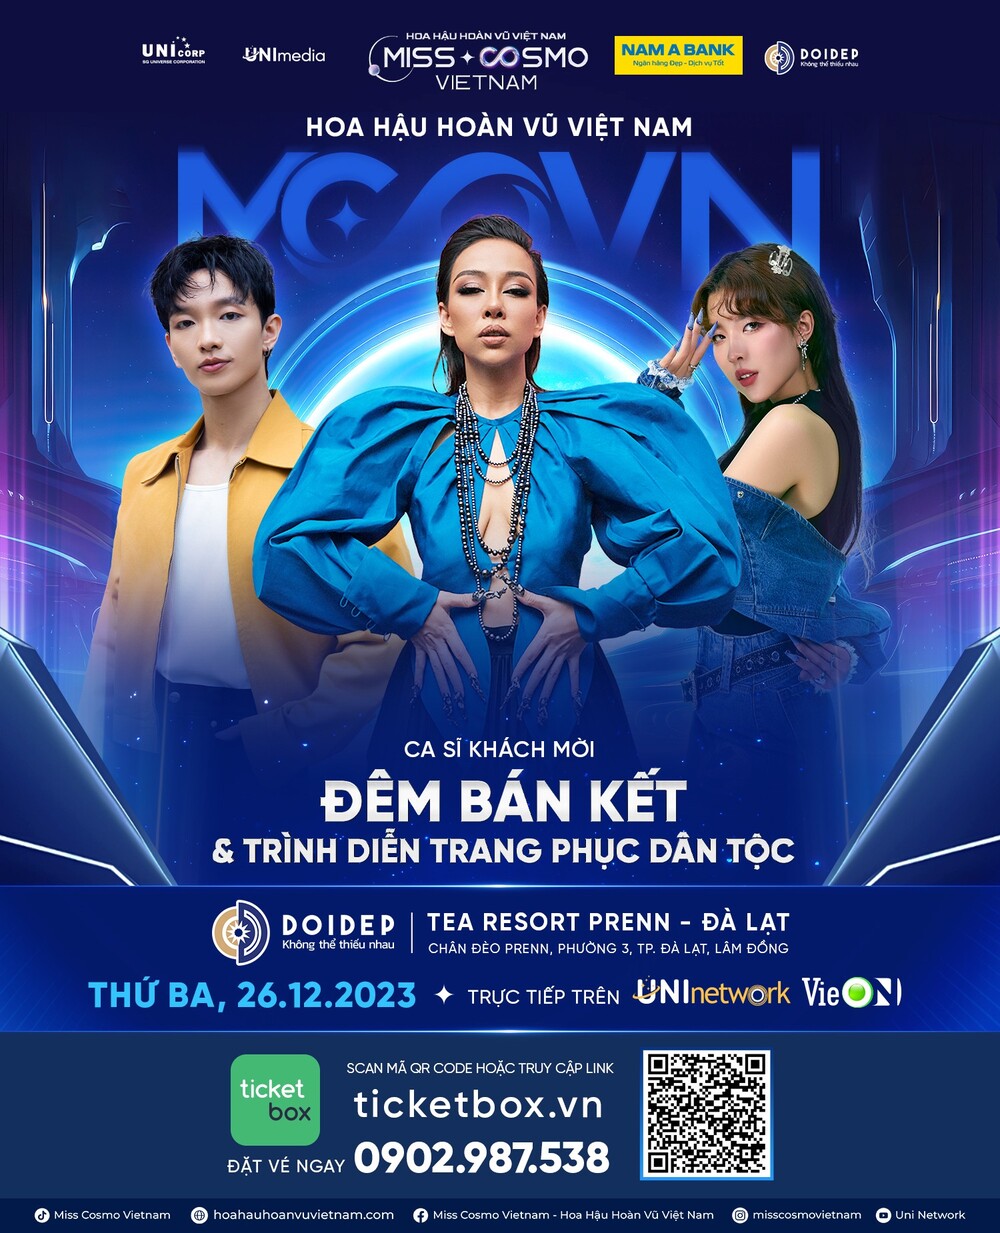 Ca sĩ Thảo Trang, Hoàng Dũng và Lamoon sẽ trình diễn tại đêm bán kết Hoa hậu Hoàn vũ Việt Nam 2023 - 1